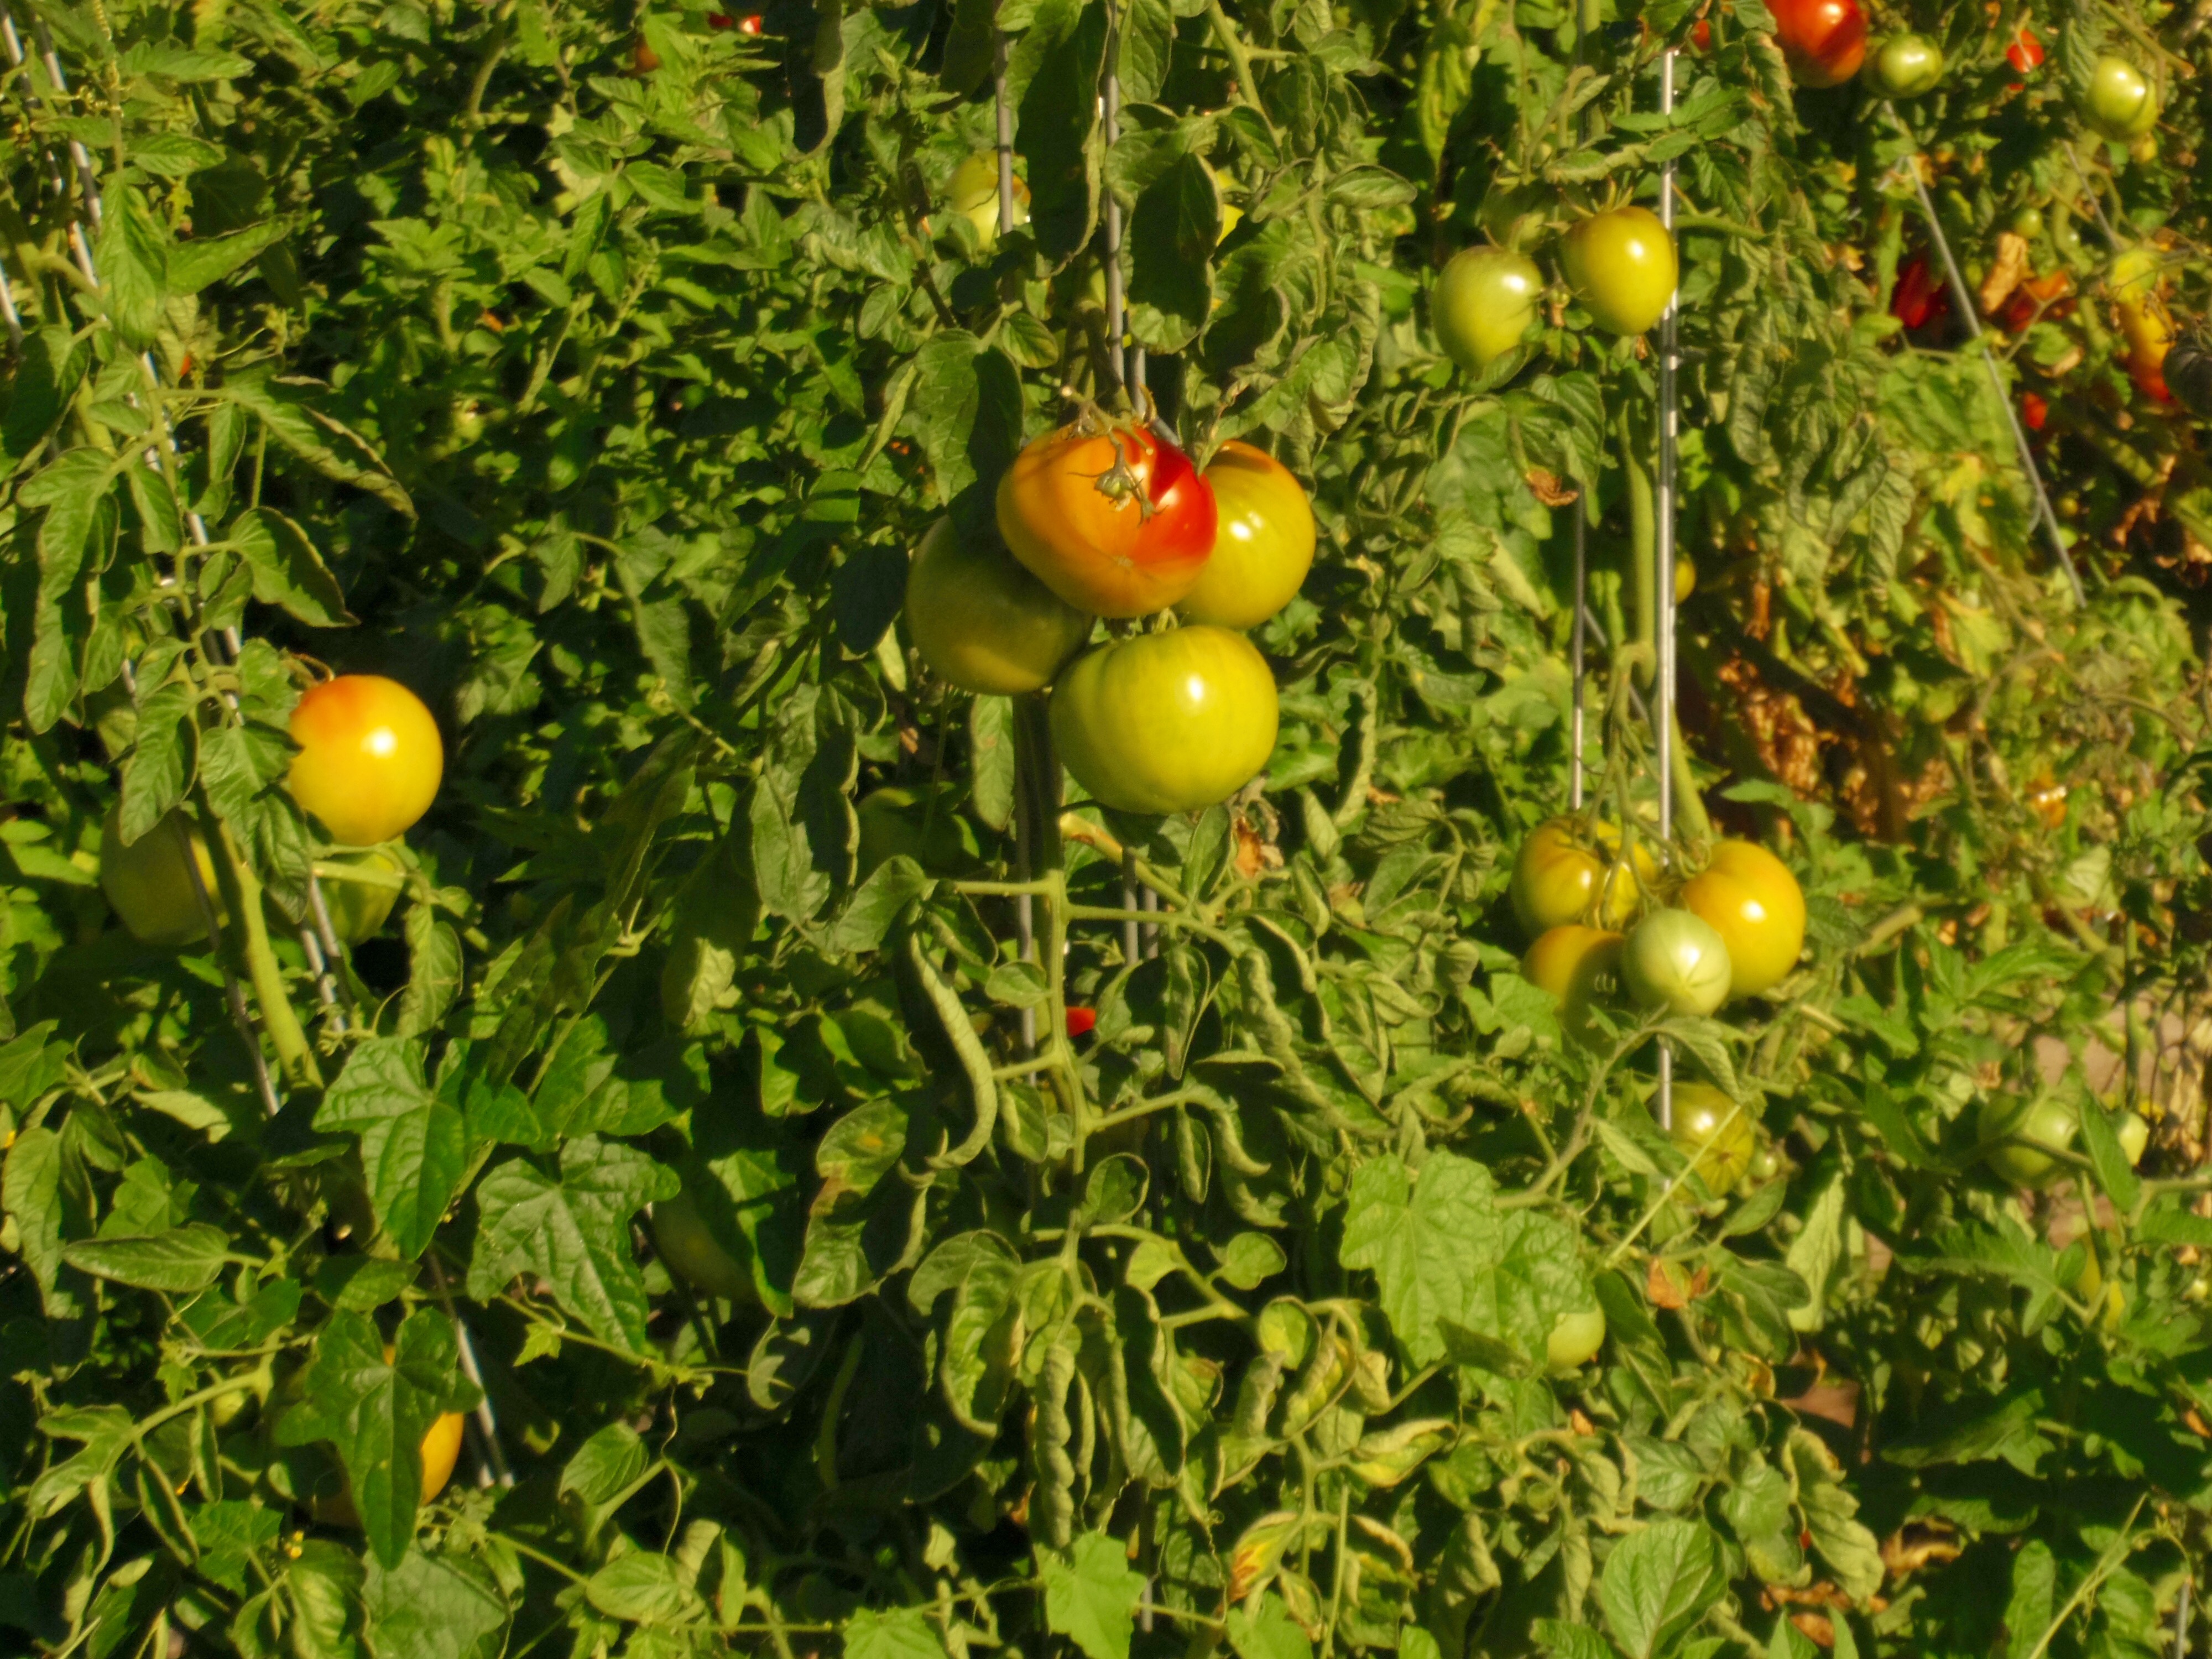 My Neighborhood- Tomatoes